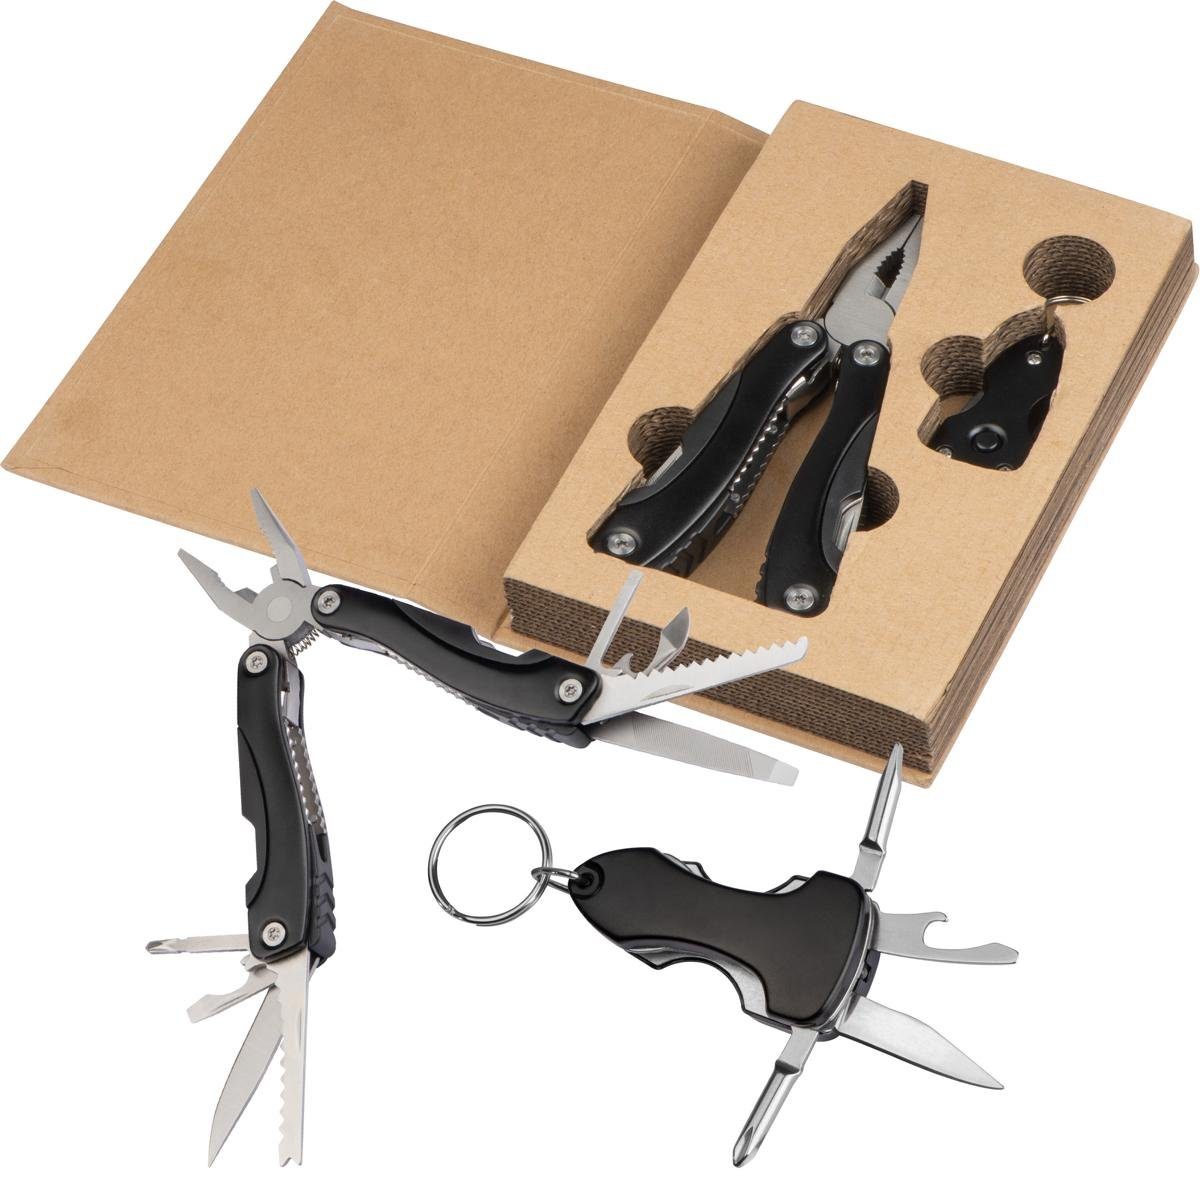 Livepac Office Schlüsselanhänger Werkzeugset bestehend aus Multitool mit Taschenmesser, Zange, Feile .